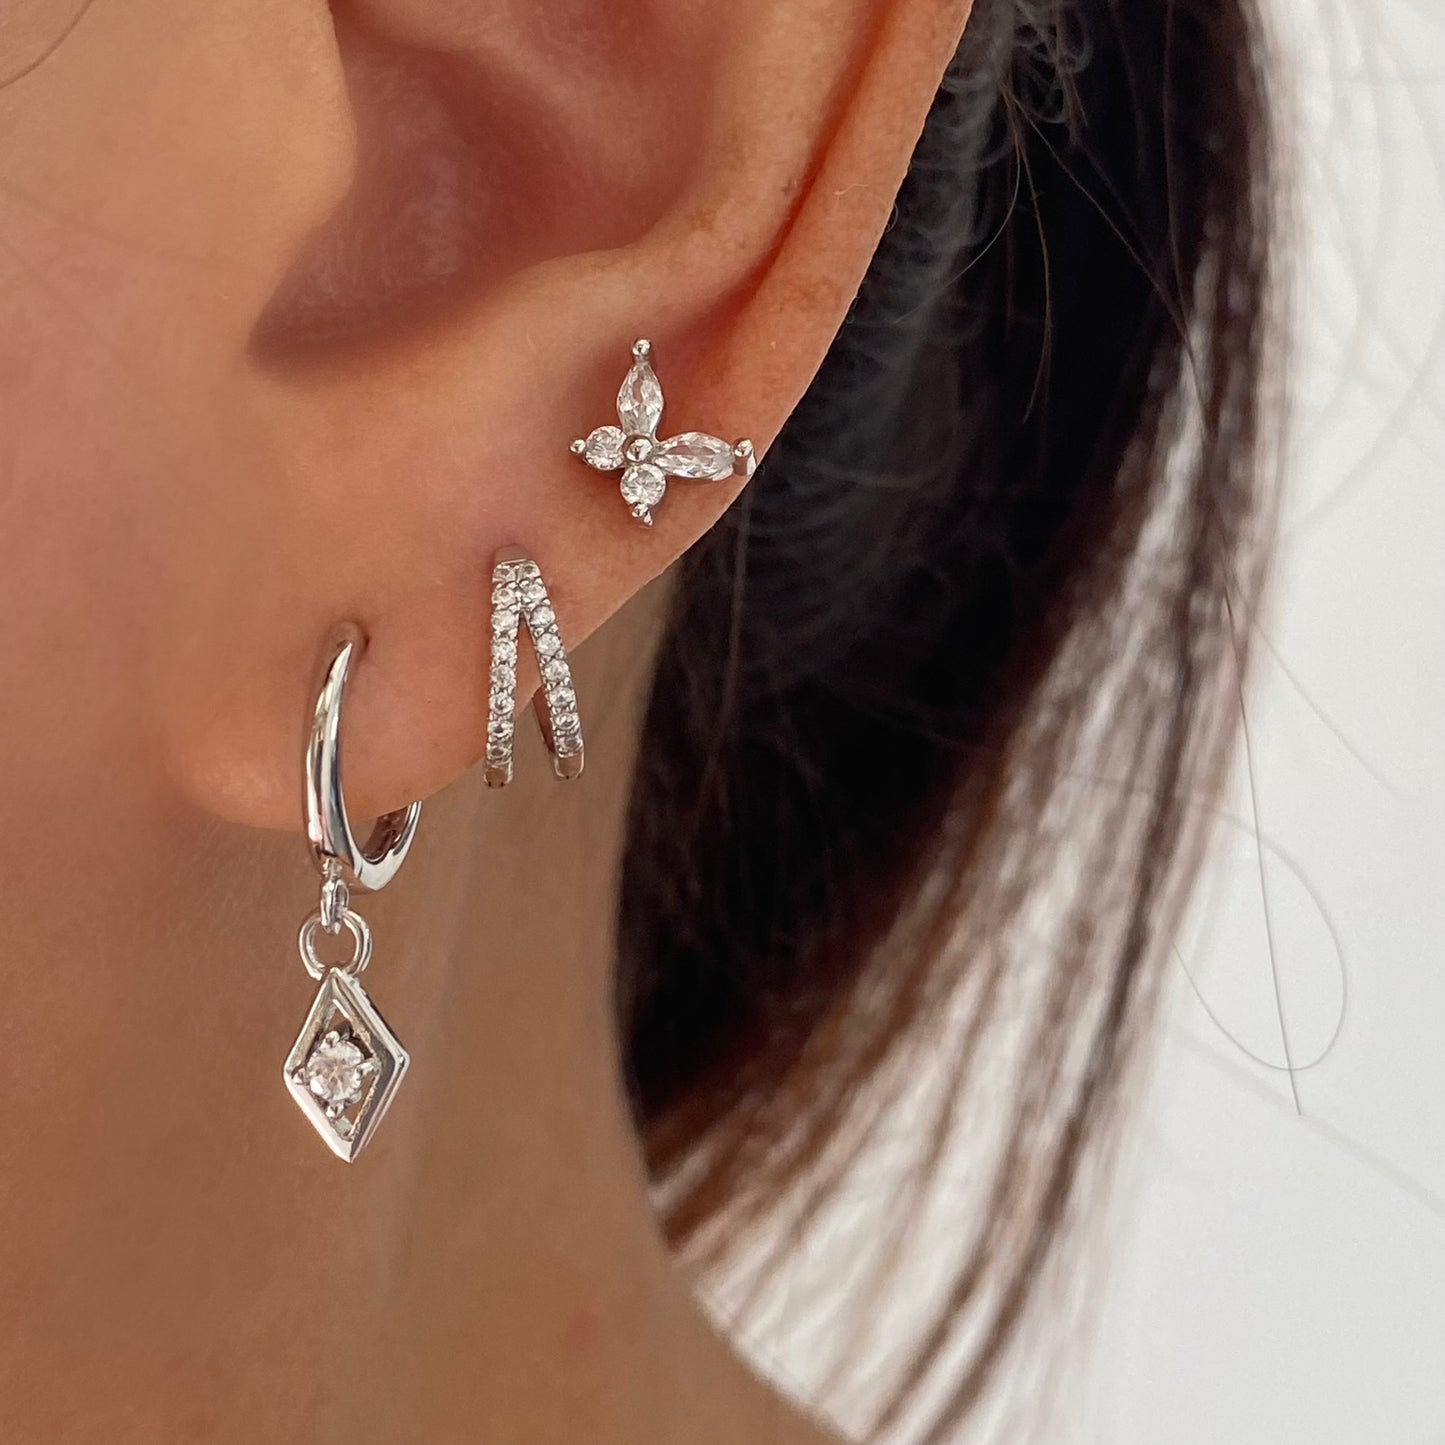 Dainty Silver Earrings, Diamond shape drop Earrings, Cubic Gold Huggie, Sterling Silver earrings, Rectangle earrings, Small Silver Earrings